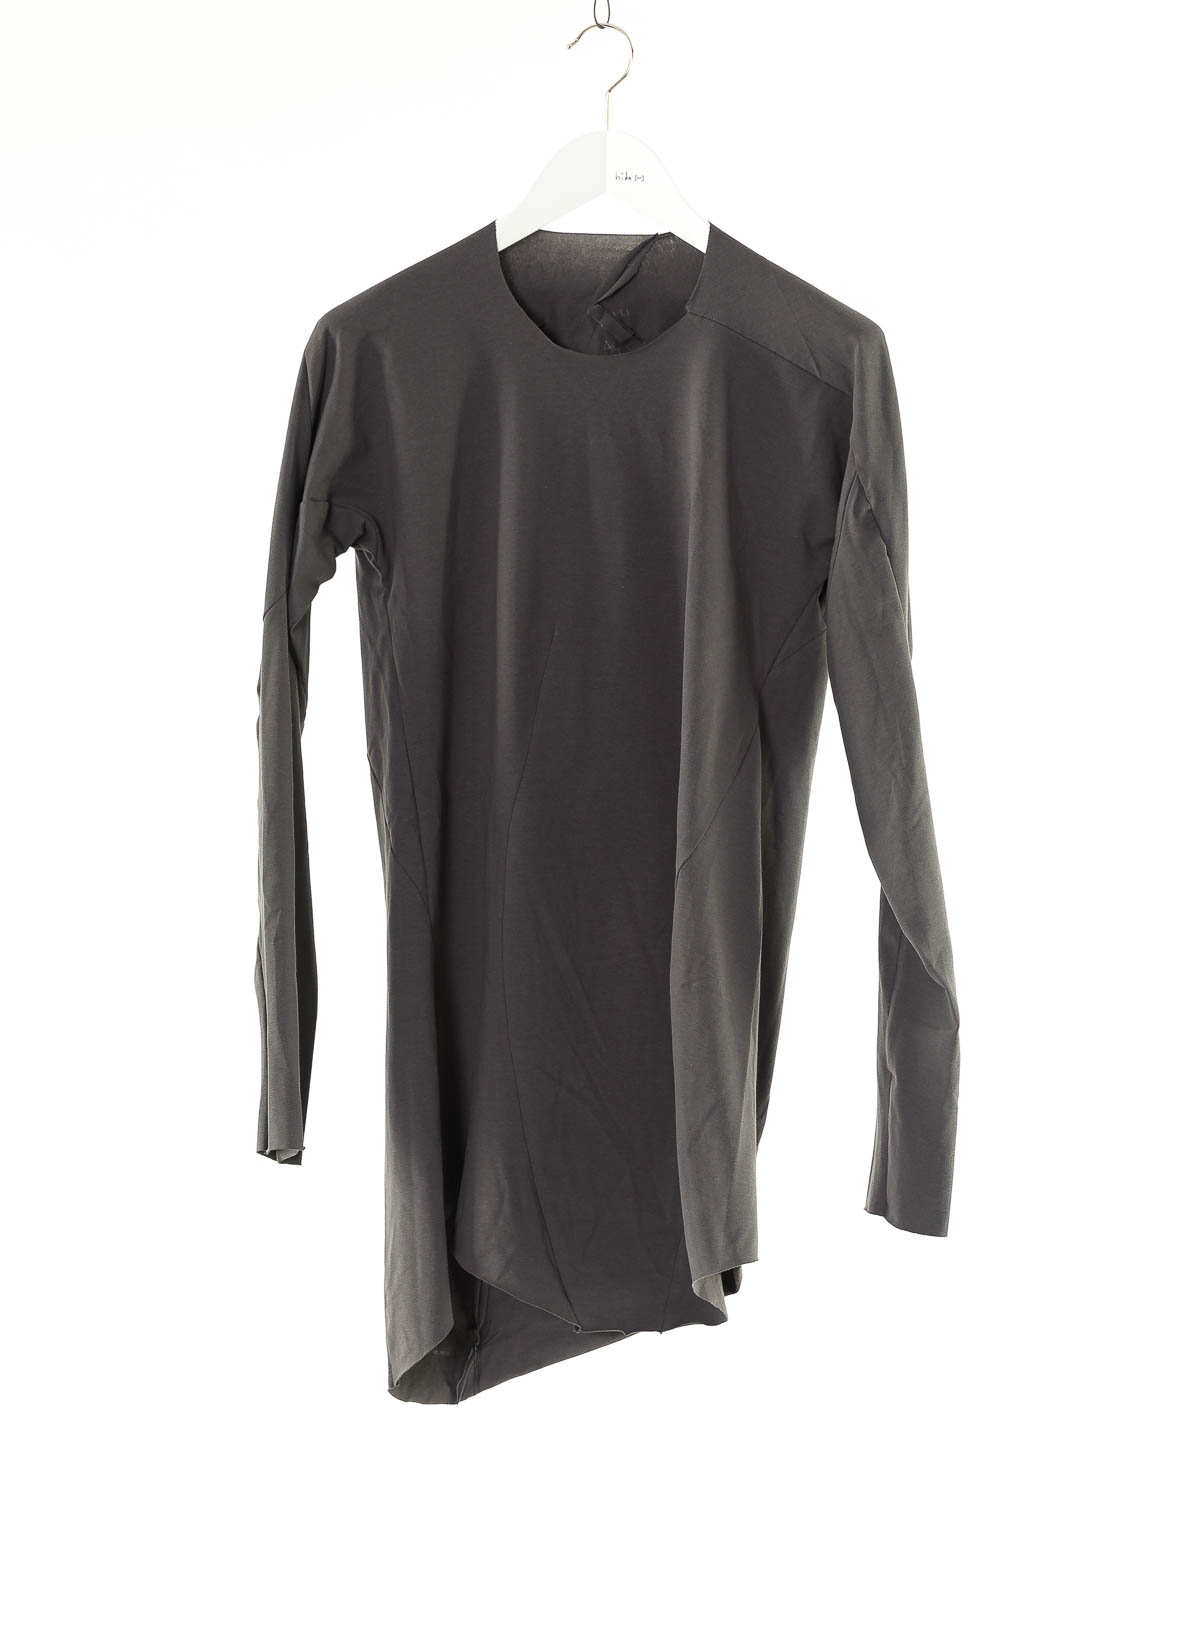 hide-m | LEON EMANUEL BLANCK Distortion LS Curved T-Shirt, grey co